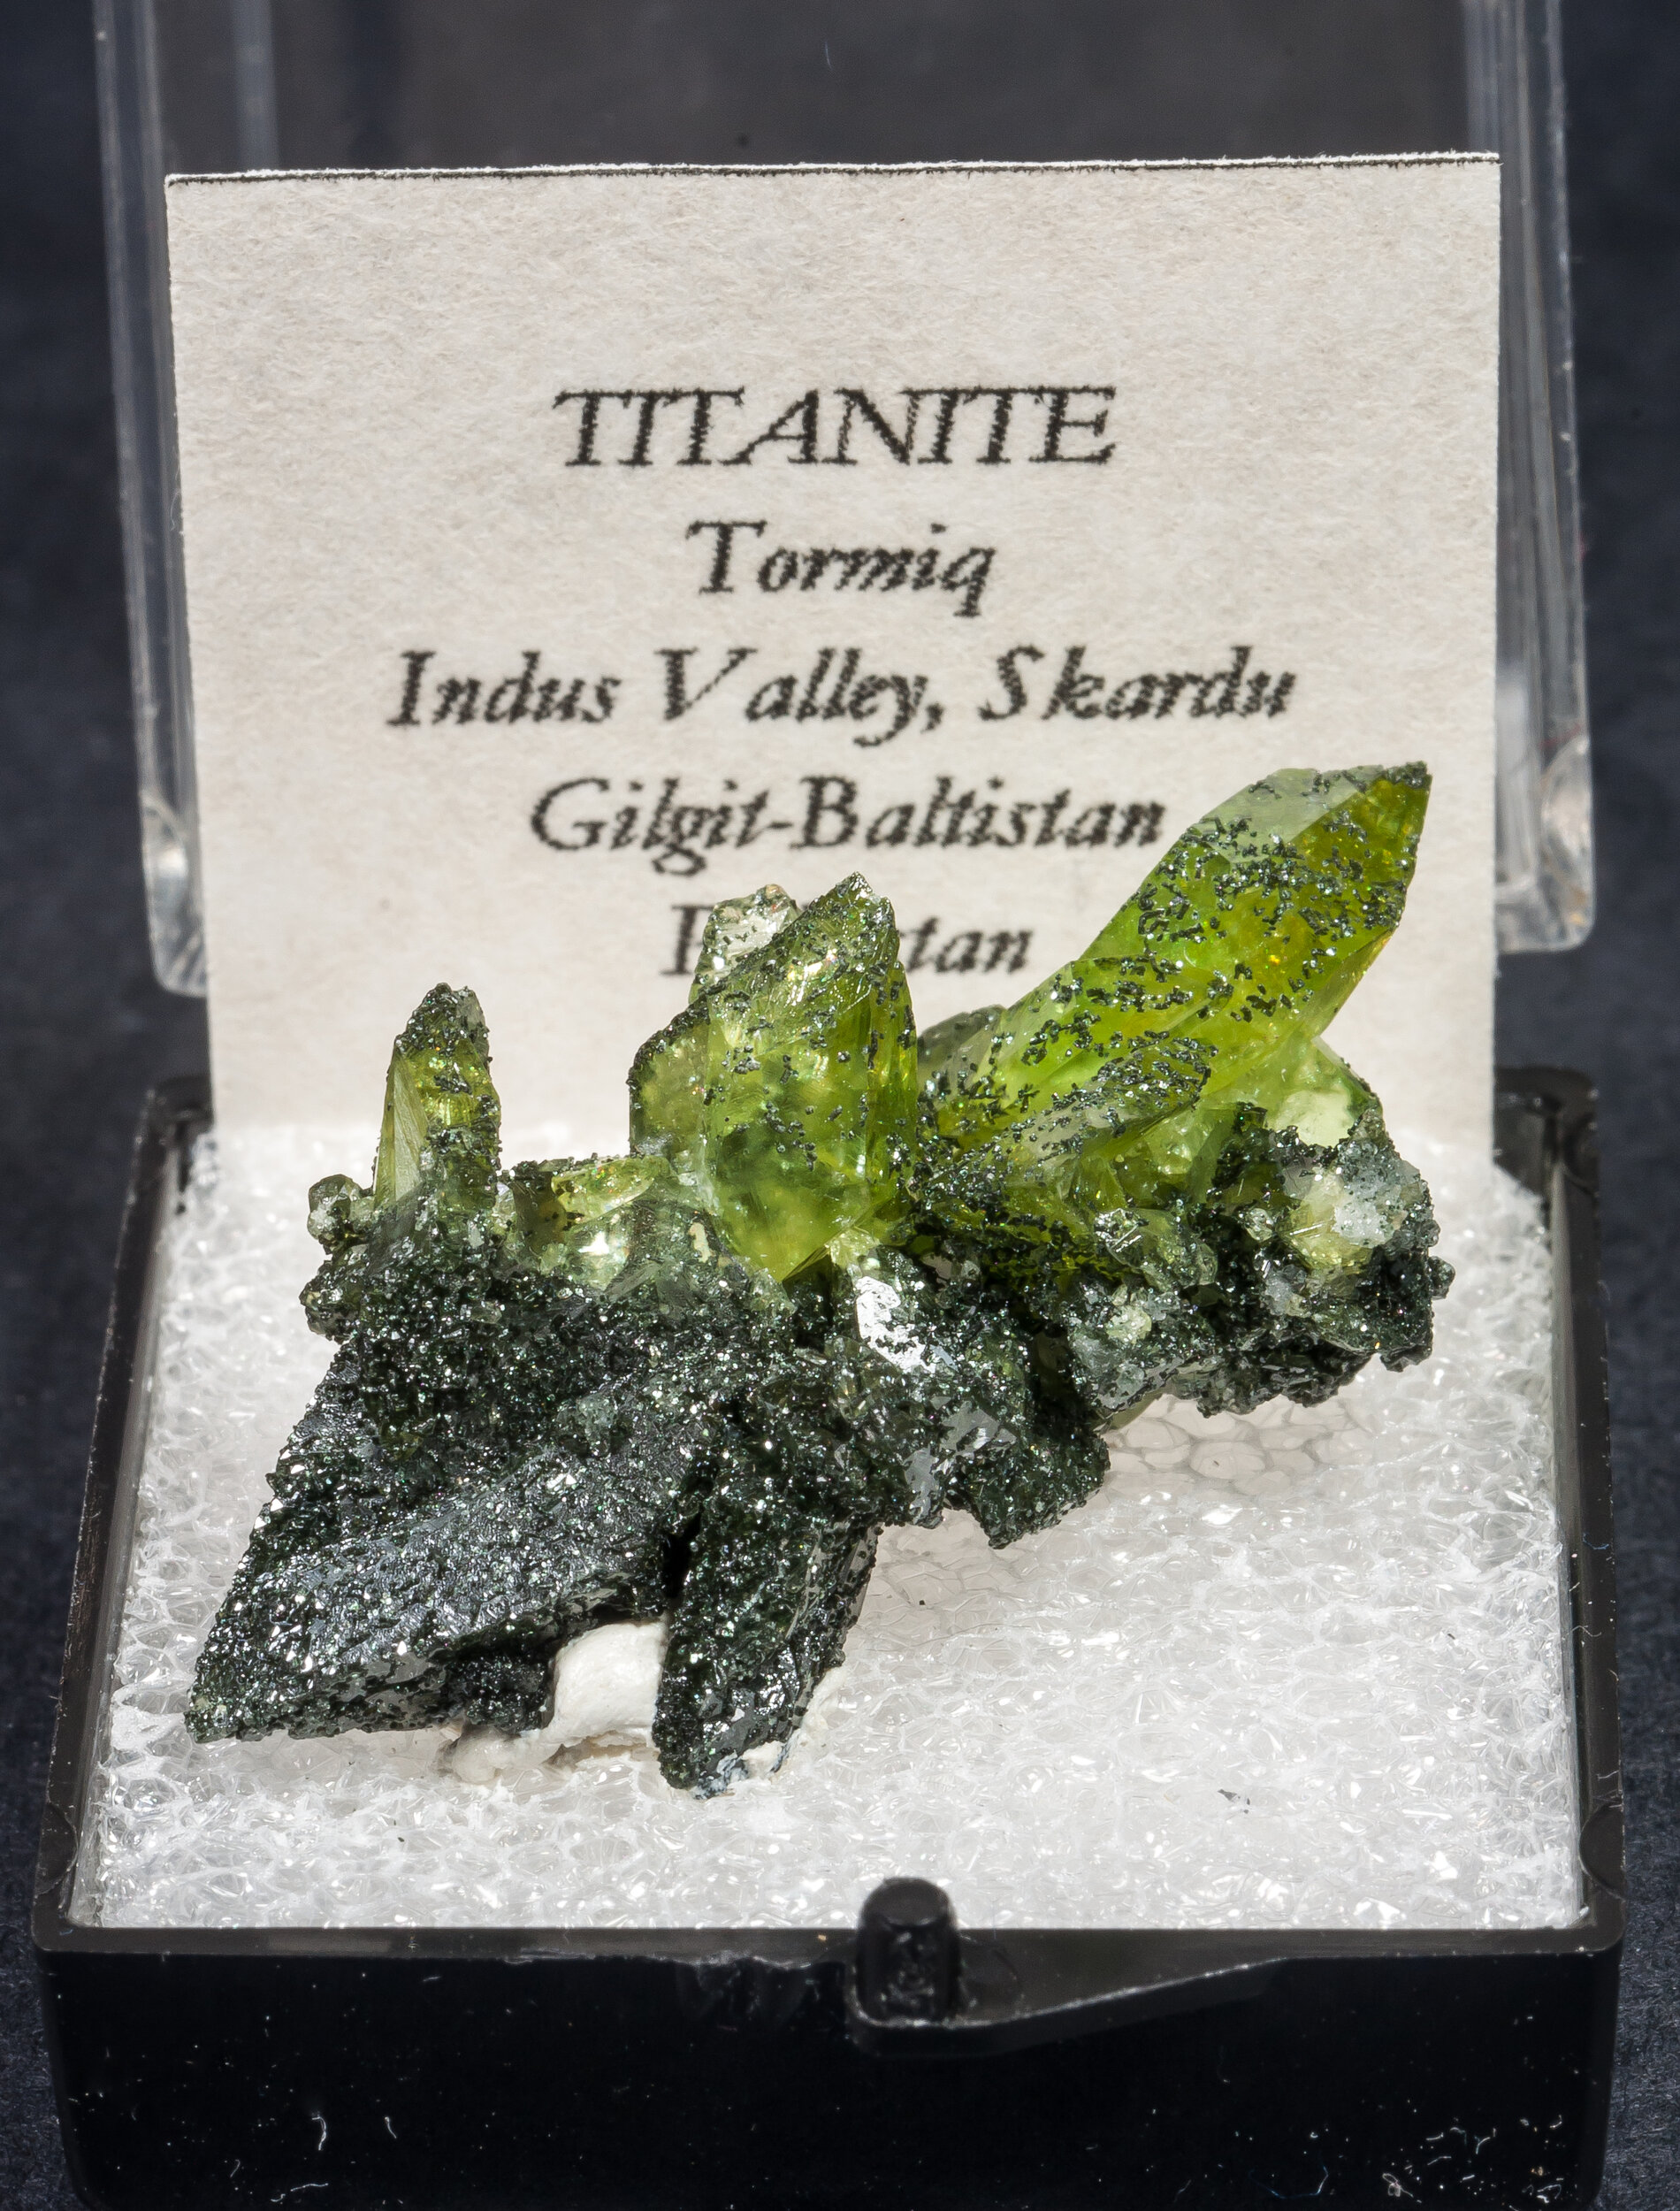 specimens/s_imagesAM7/Titanite-MN26AM7f.jpg